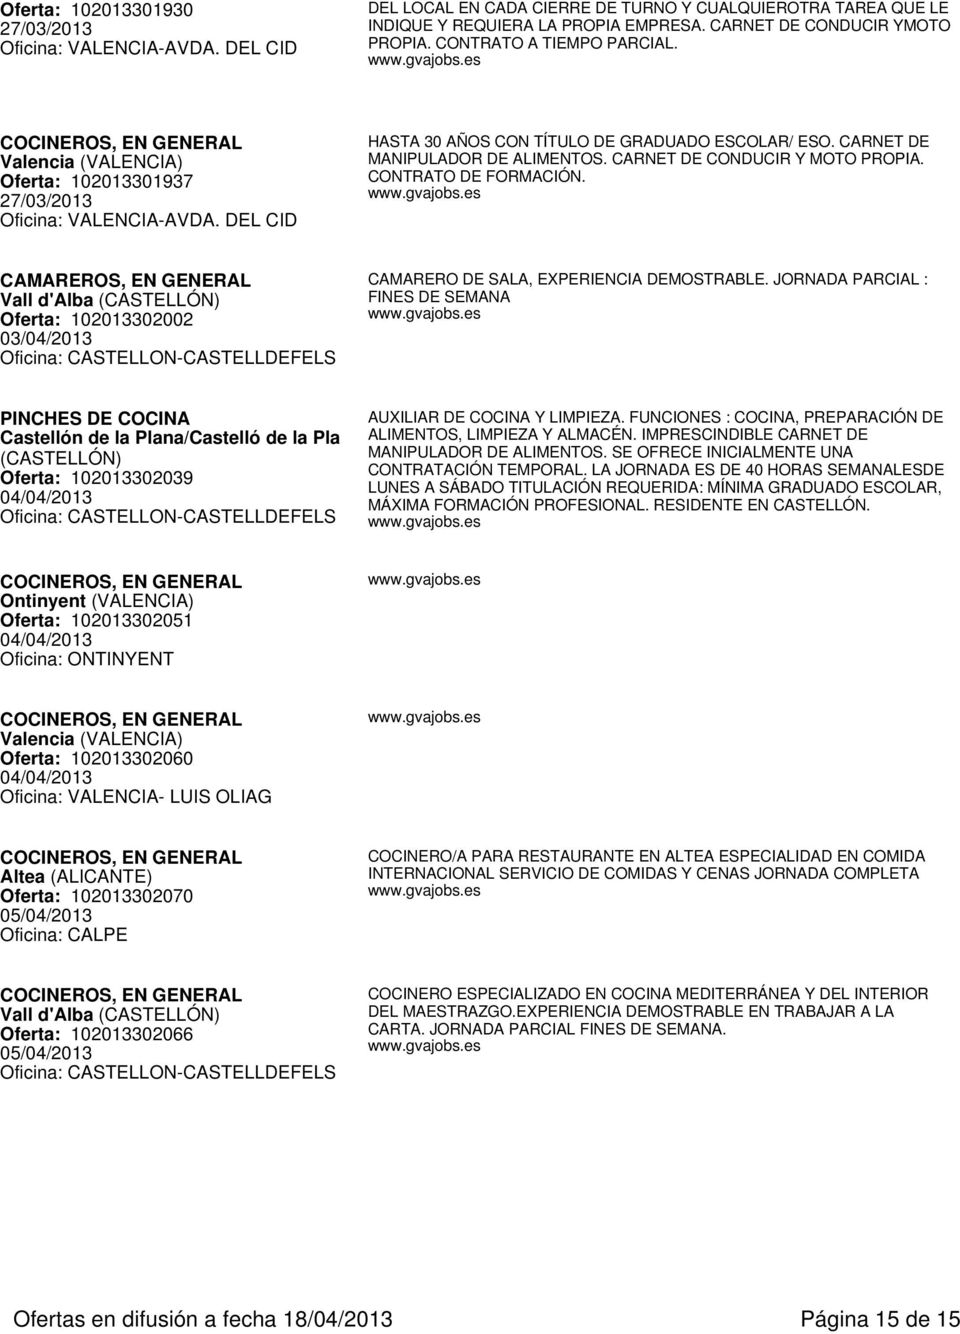 CARNET DE CONDUCIR Y MOTO PROPIA. CONTRATO DE FORMACIÓN. CAMAREROS, EN Vall d'alba Oferta: 102013302002 03/04/2013 CAMARERO DE SALA, EXPERIENCIA DEMOSTRABLE.